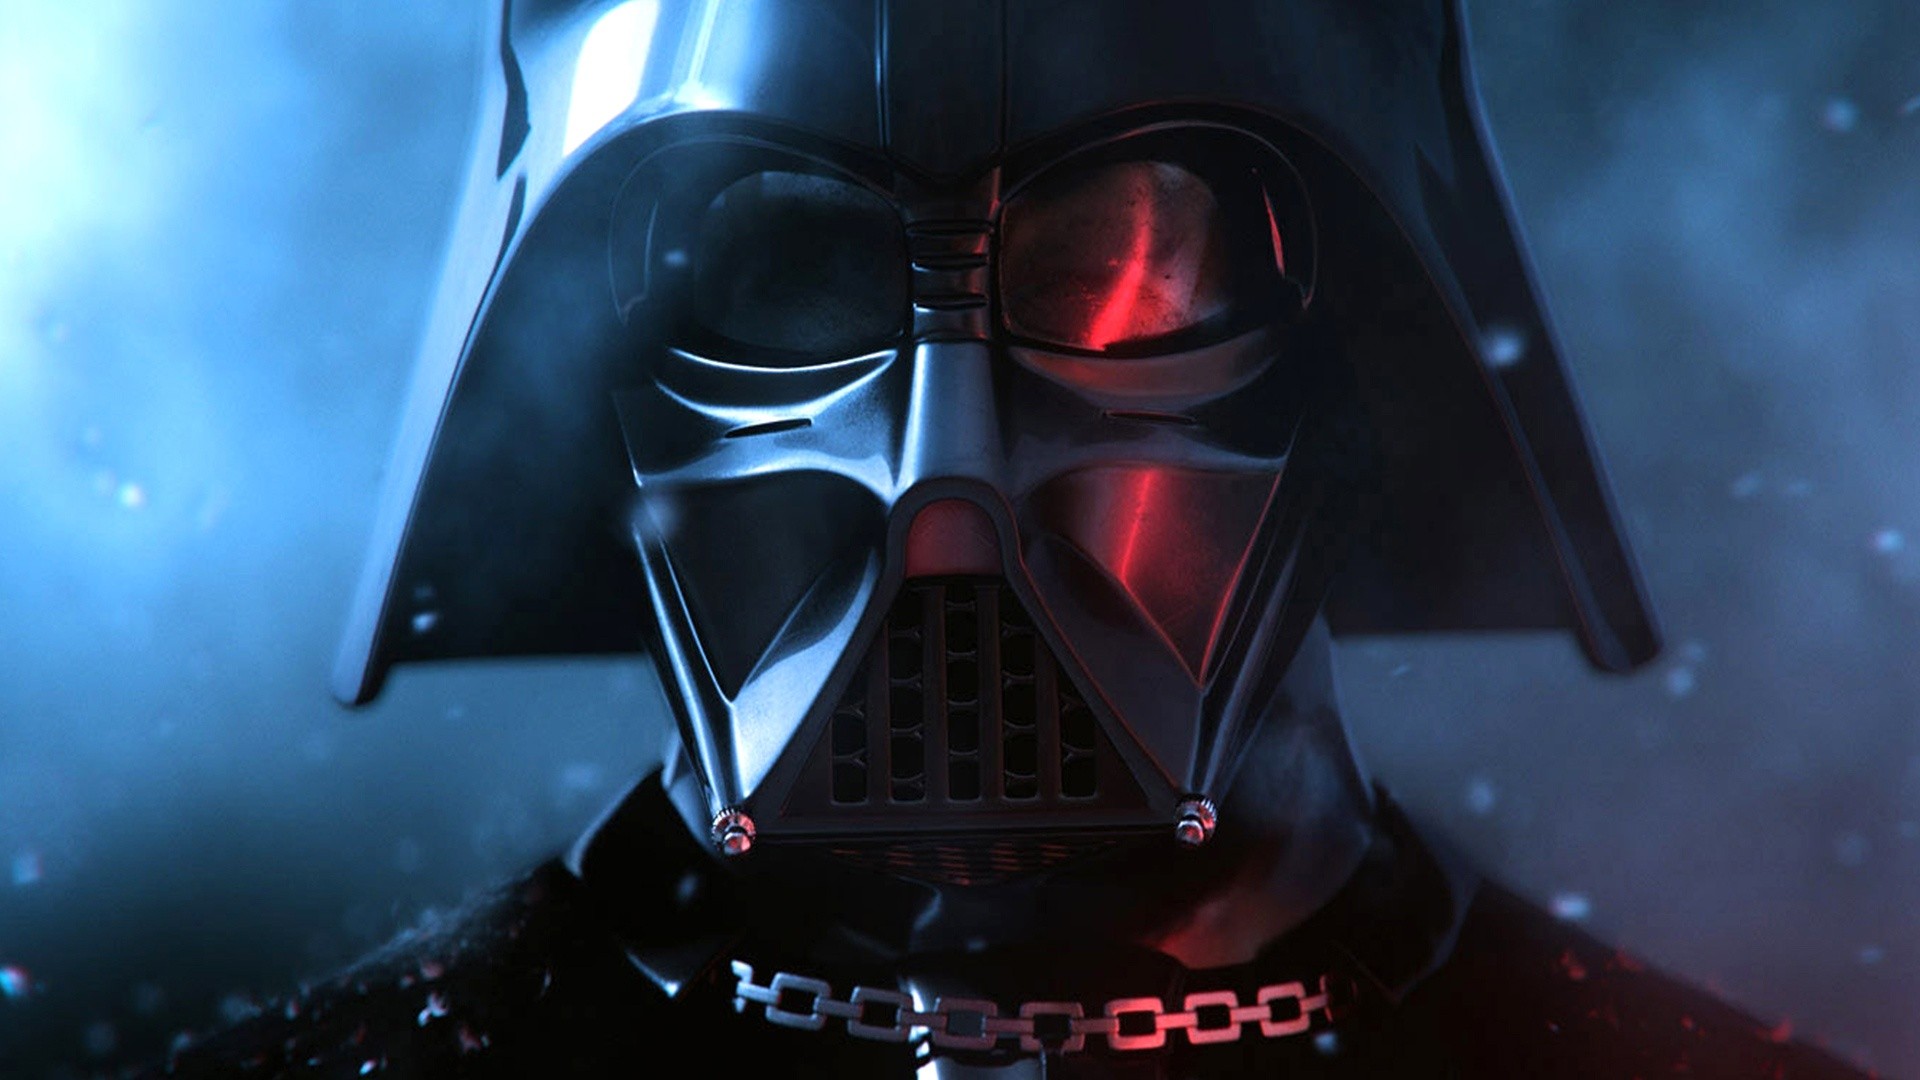 Star Wars Wallpaper Darth Vader Dark Side